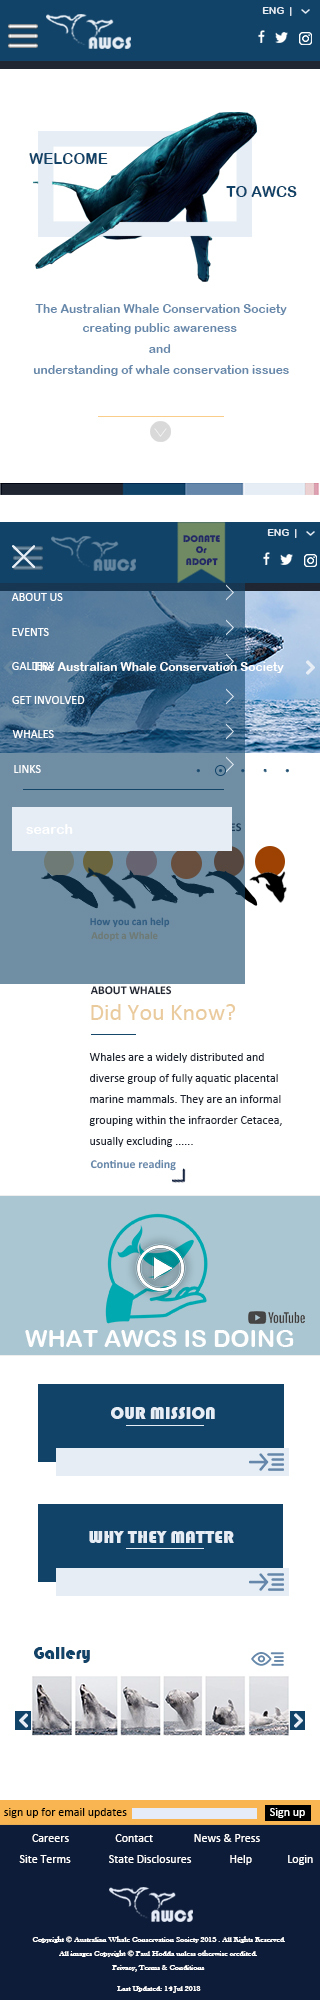 鲸鱼保护协会网站logo redesign图2